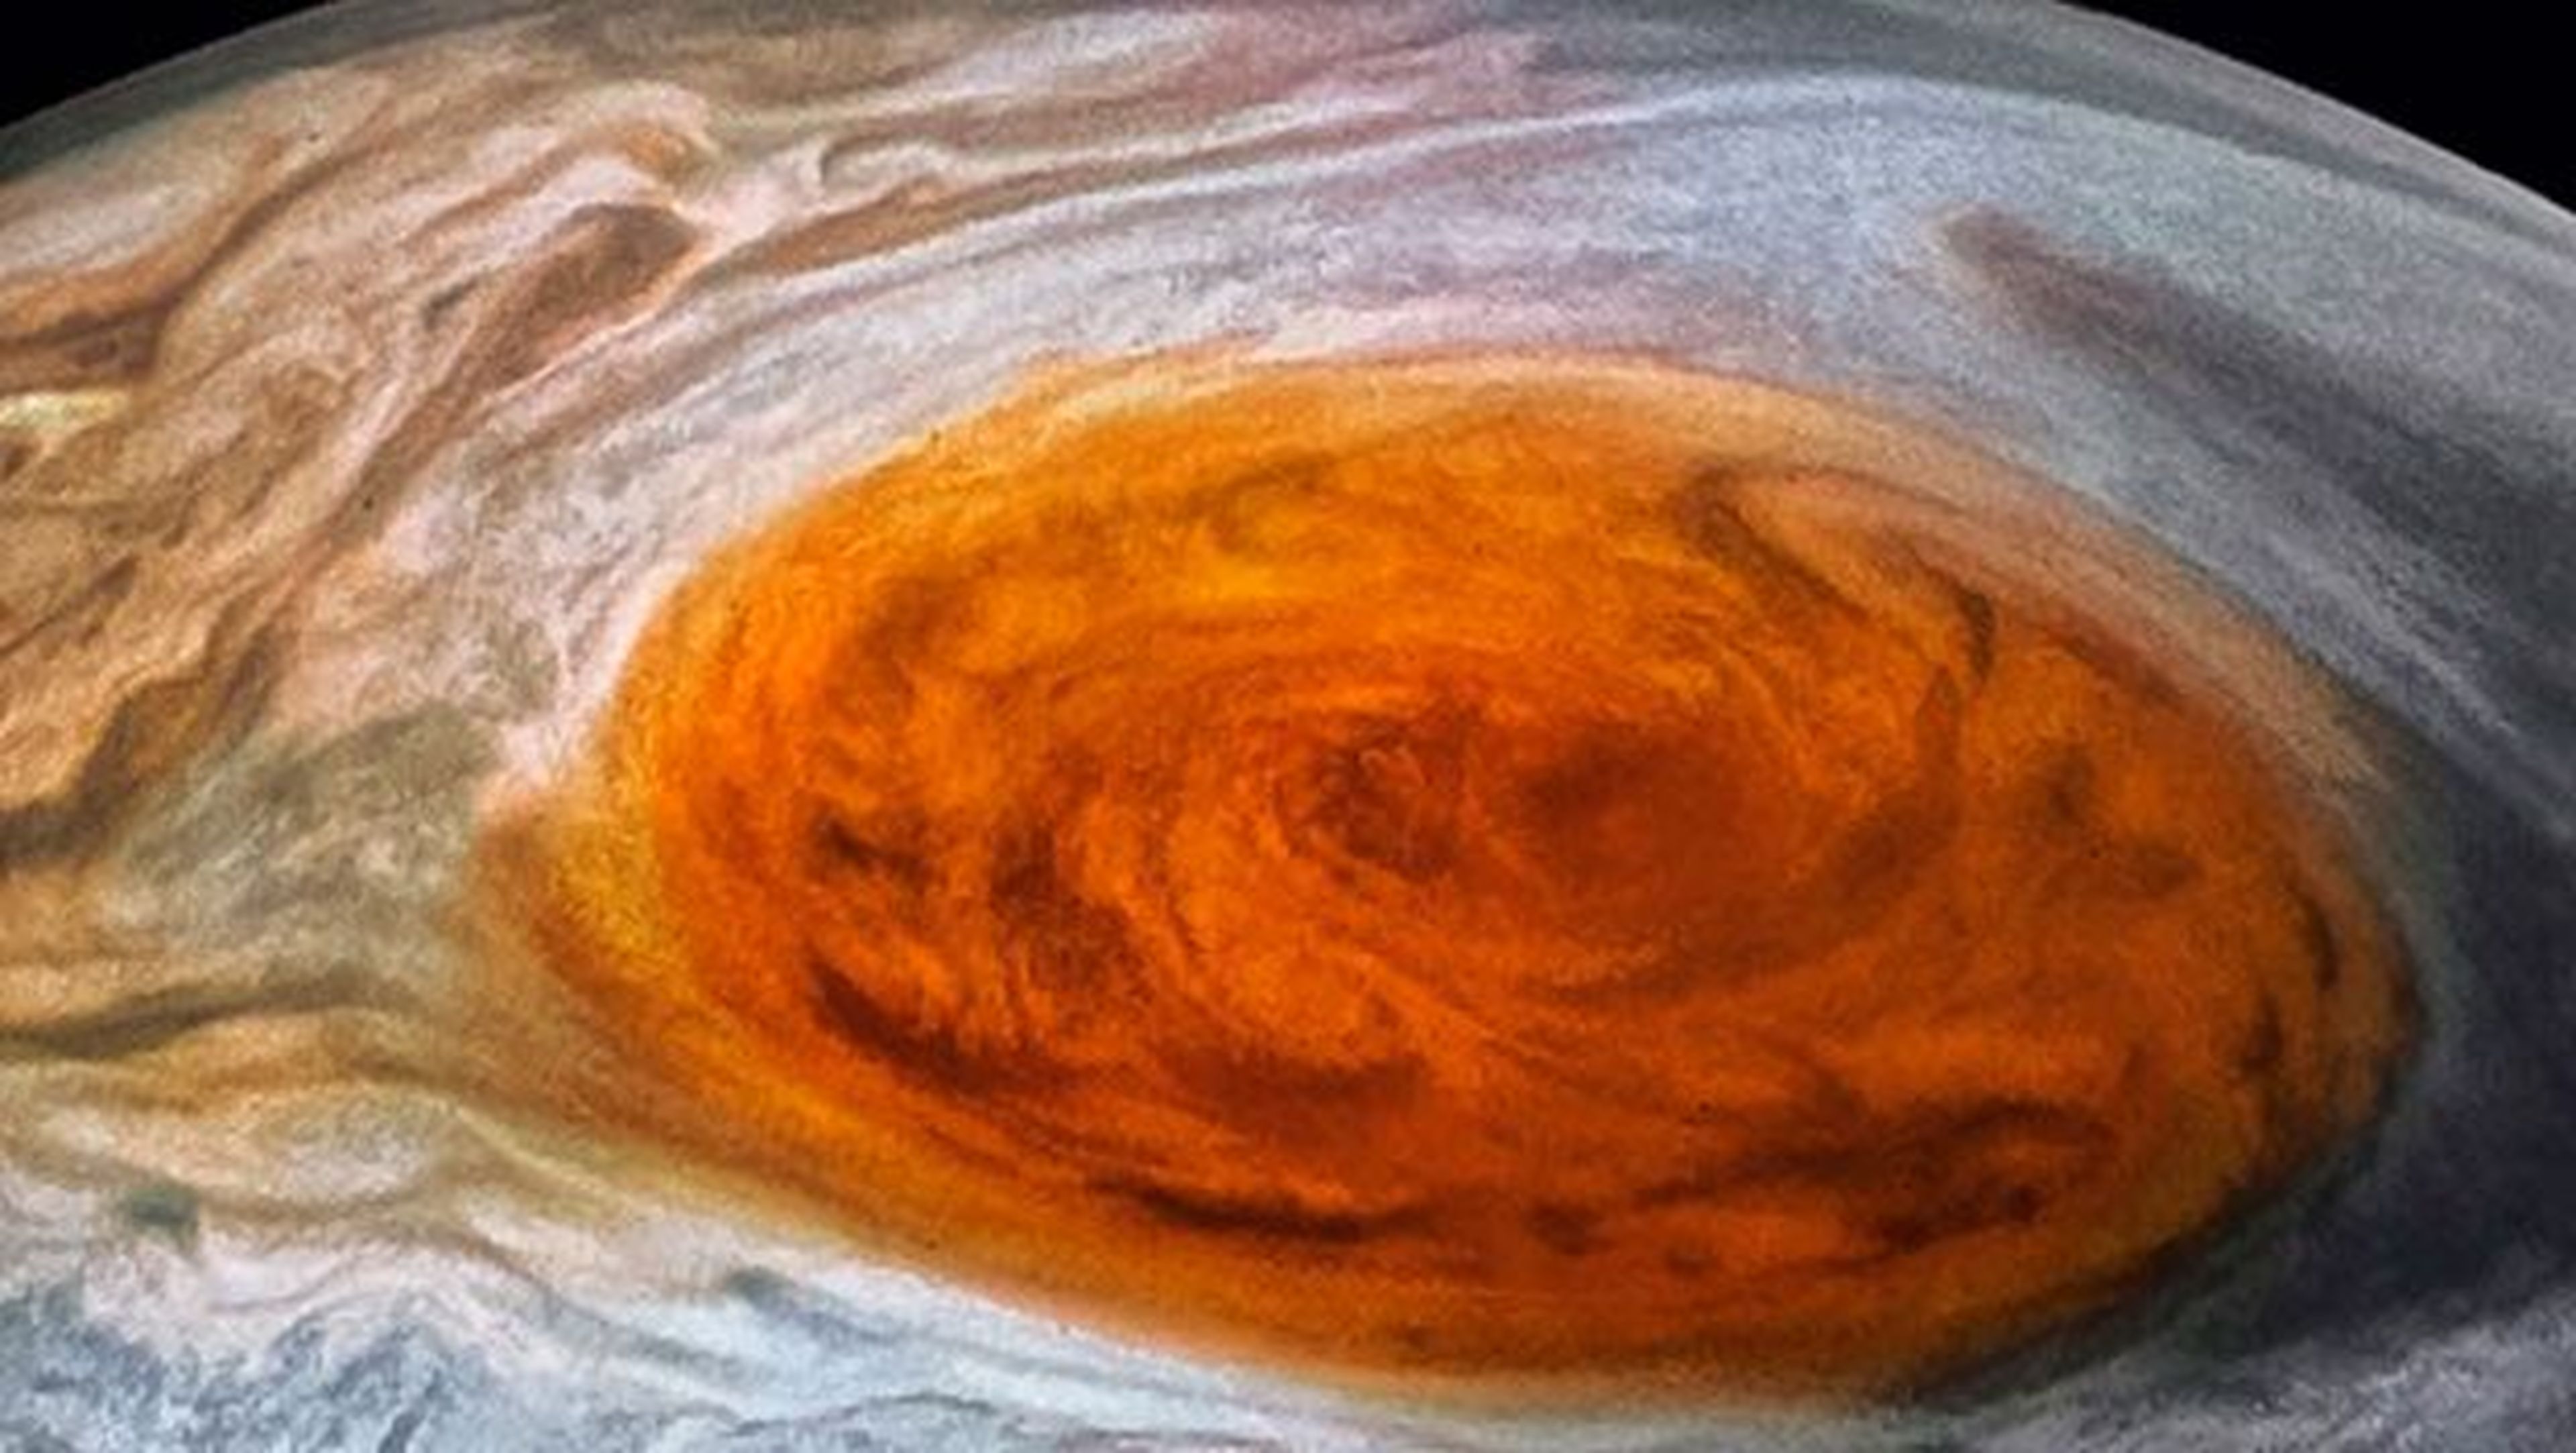 La Mancha Roja de Júpiter tiene fecha de caducidad